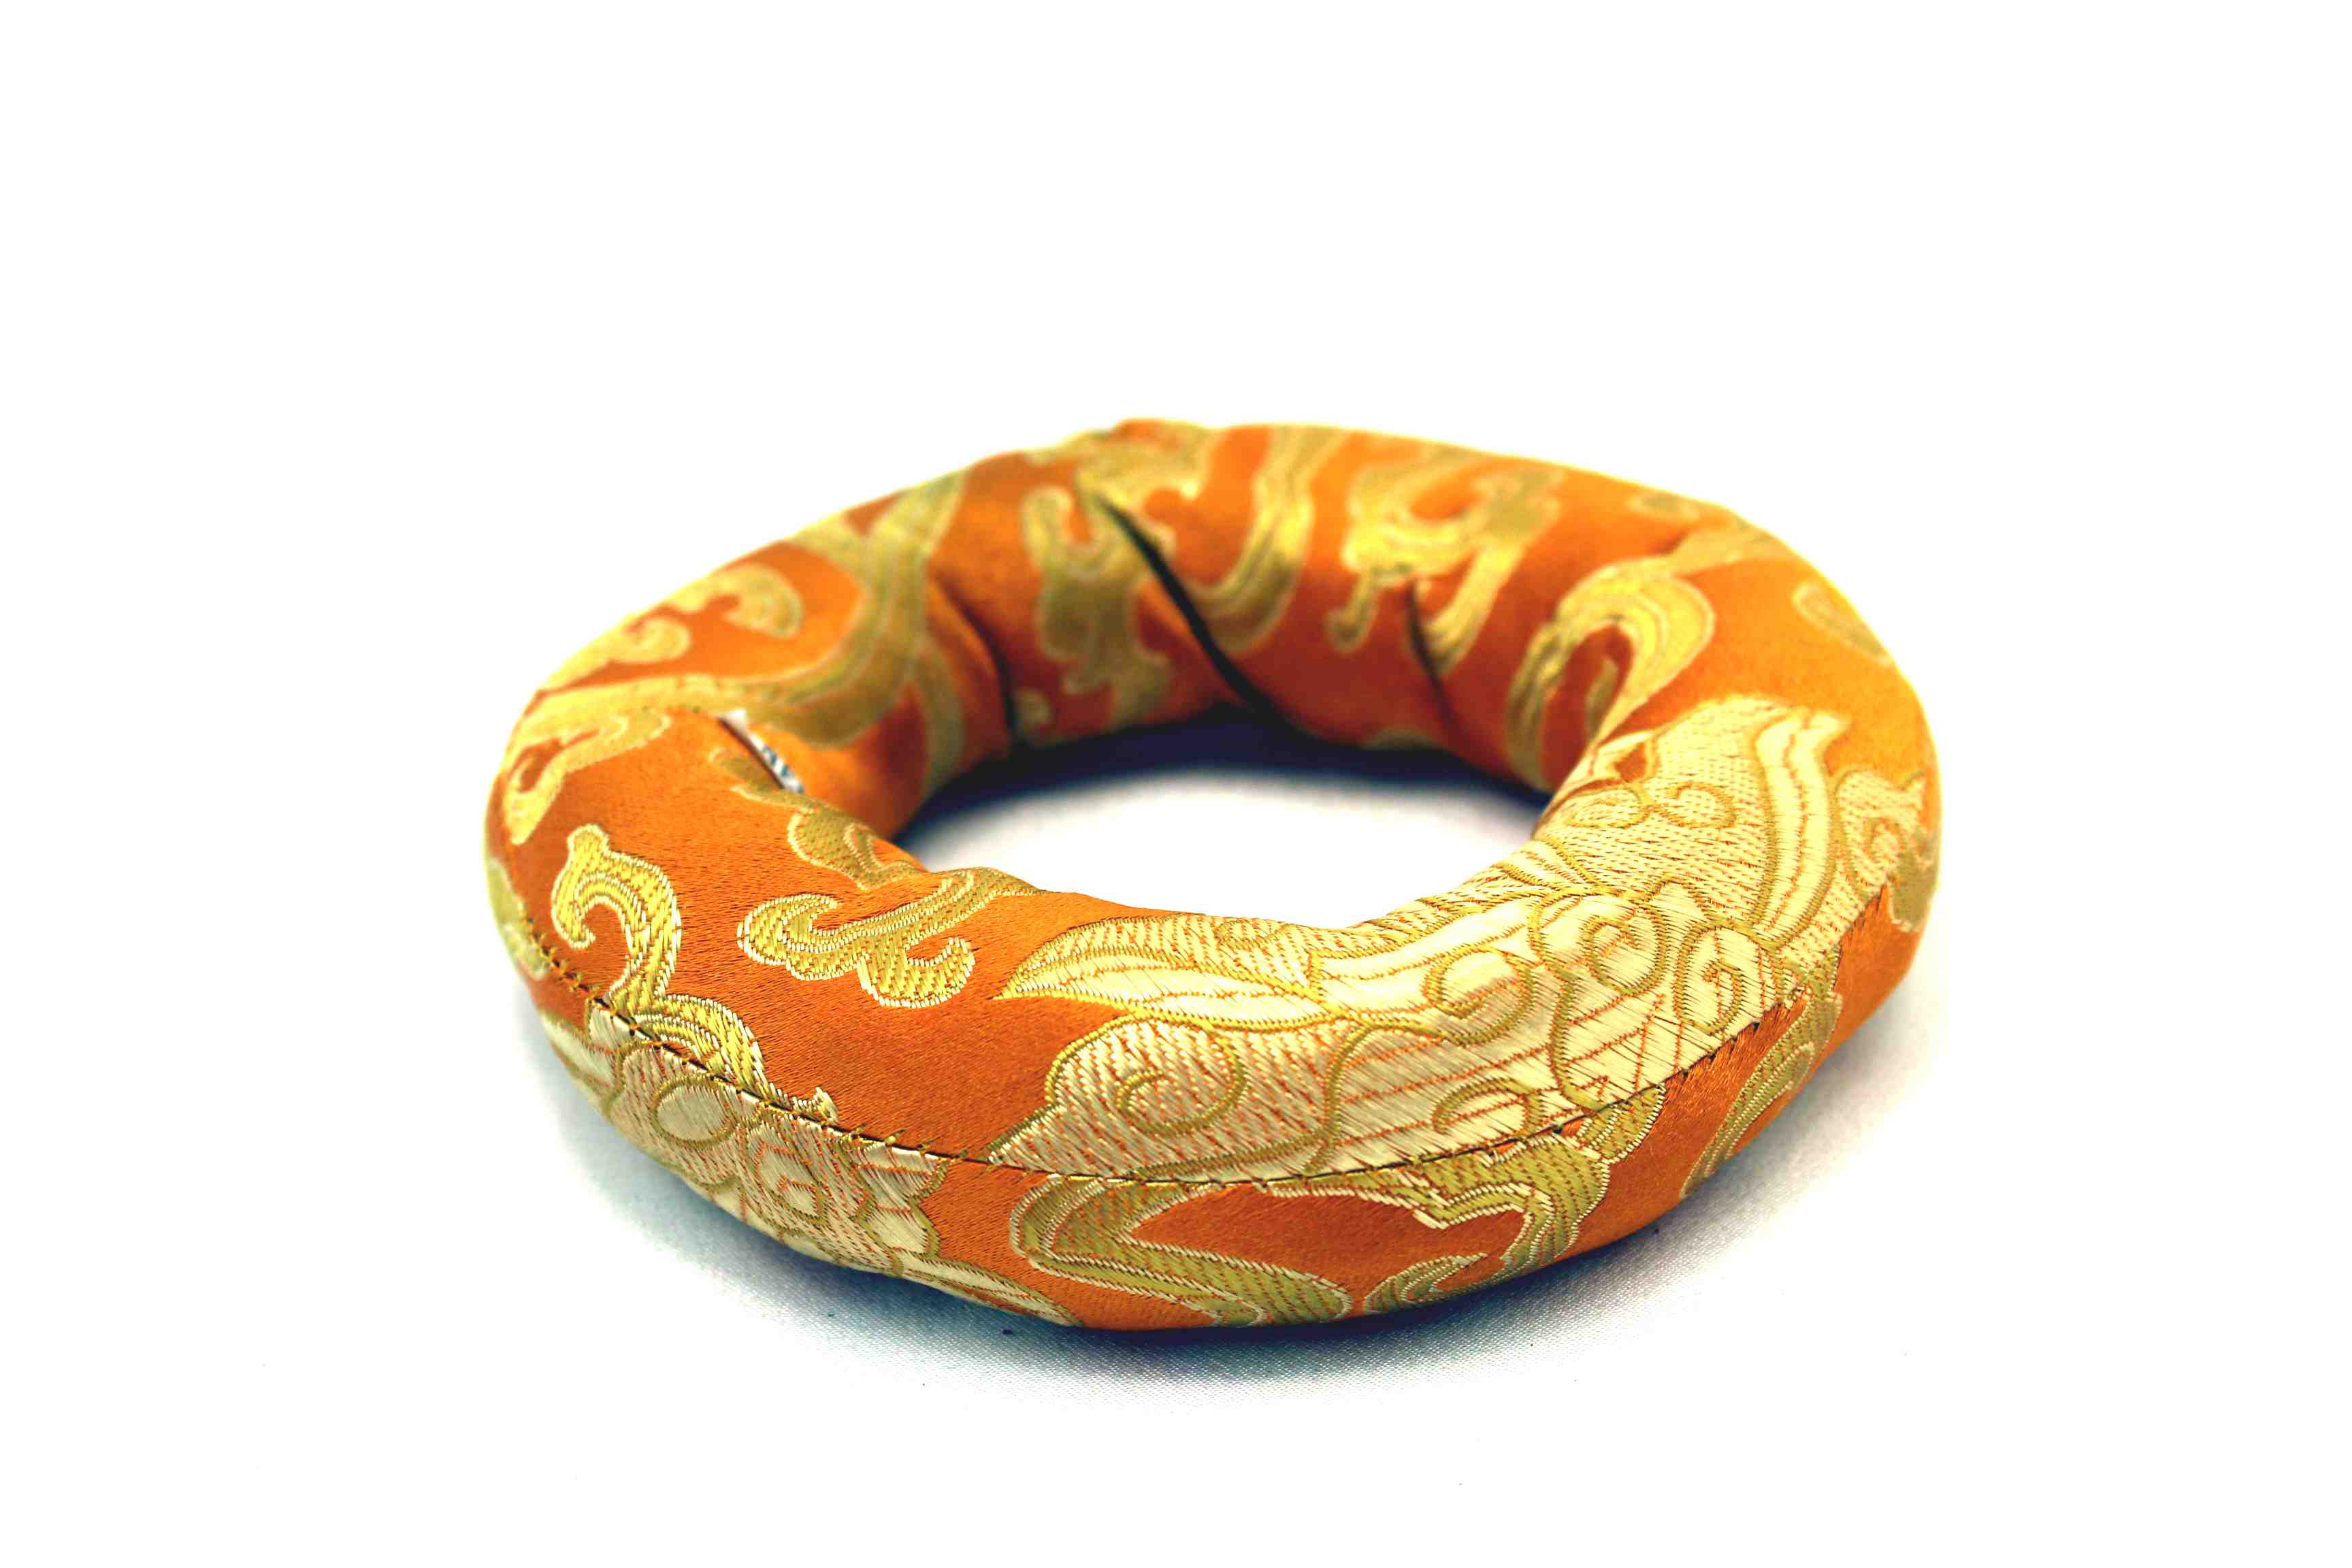 Vankúš brokátový prstencový 12,5 cm oranžový